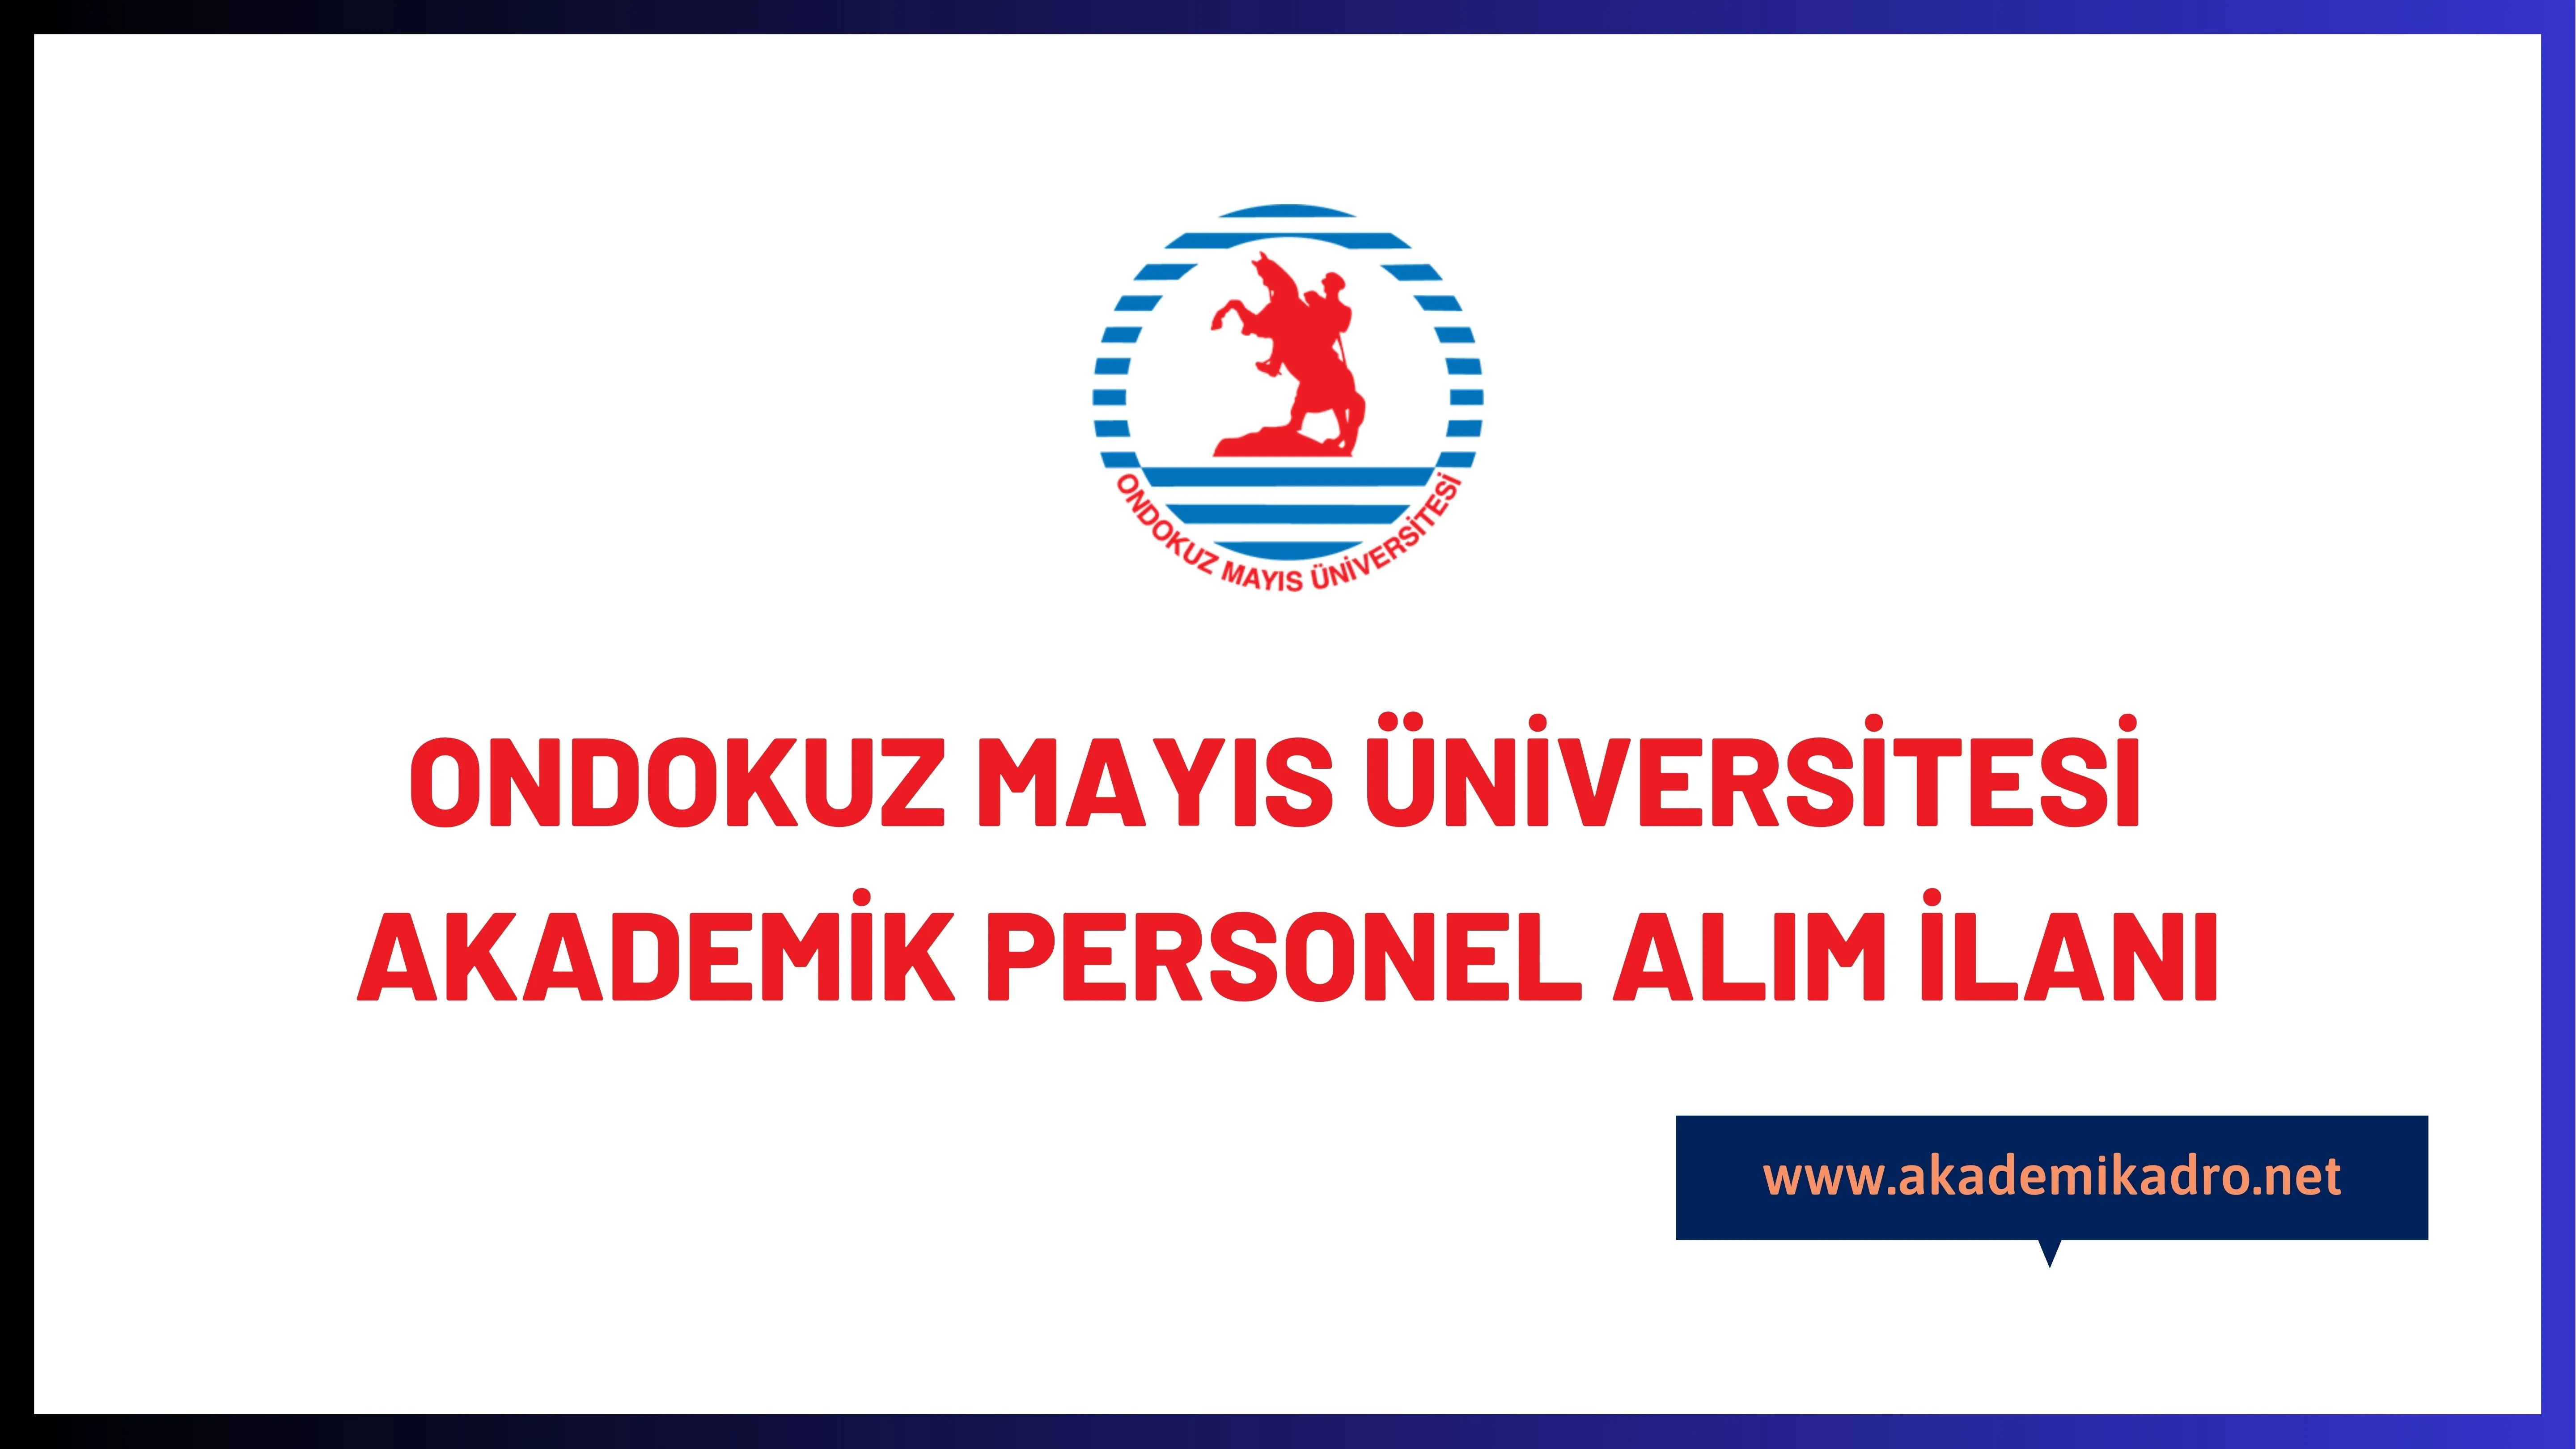 Ondokuz Mayıs Üniversitesi bir çok alandan 19 akademik personel alacak.